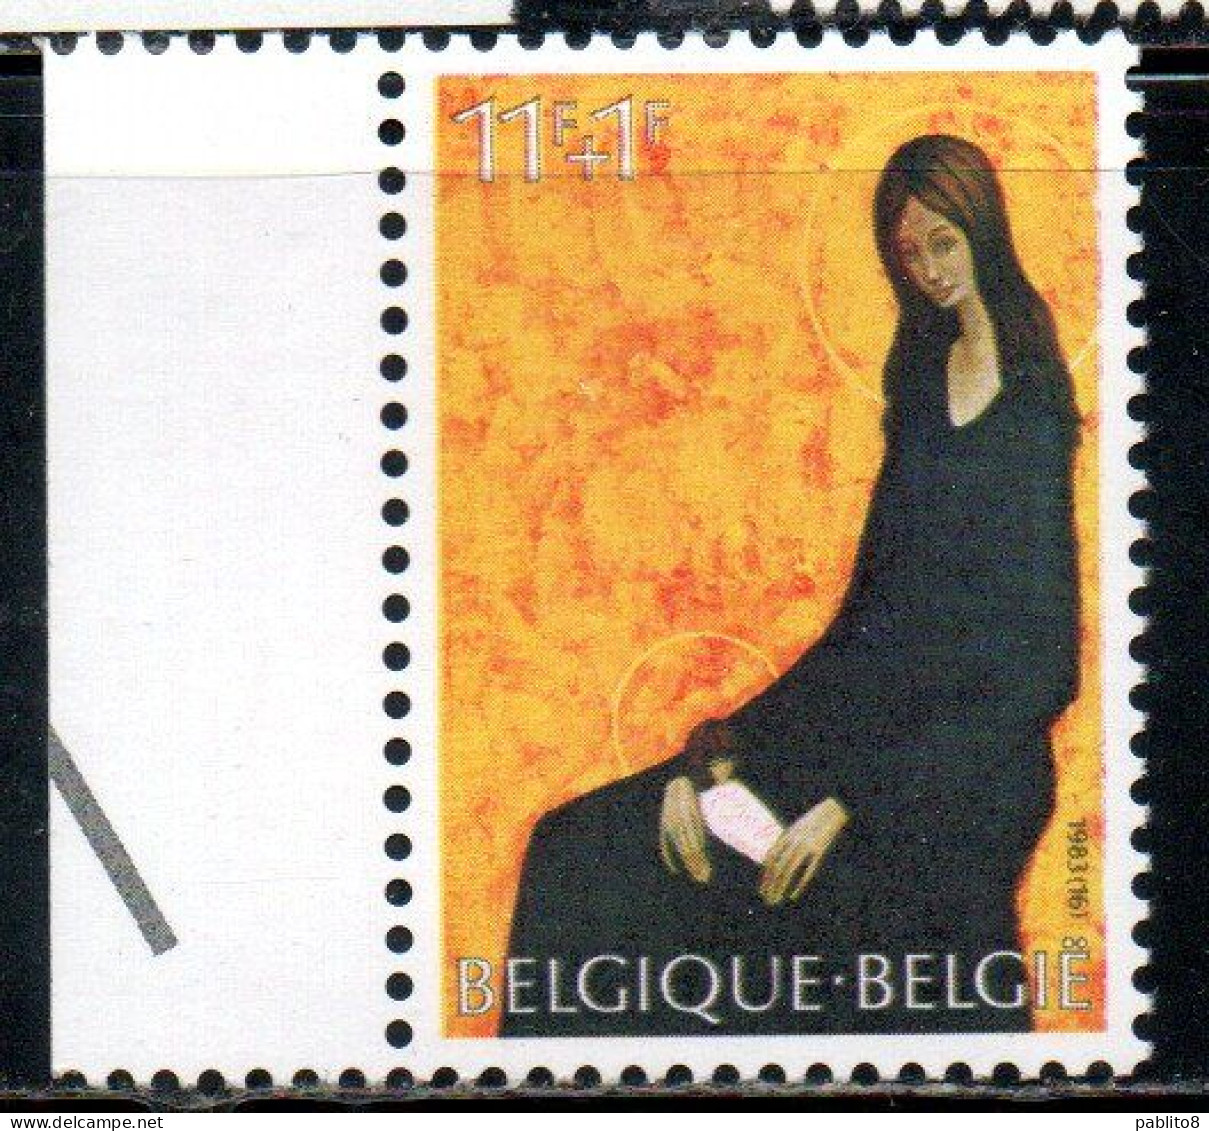 BELGIQUE BELGIE BELGIO BELGIUM 1983 CHRISTMAS NOEL NATALE WEIHNACHTEN NAVIDAD 17fr MNH - Unused Stamps